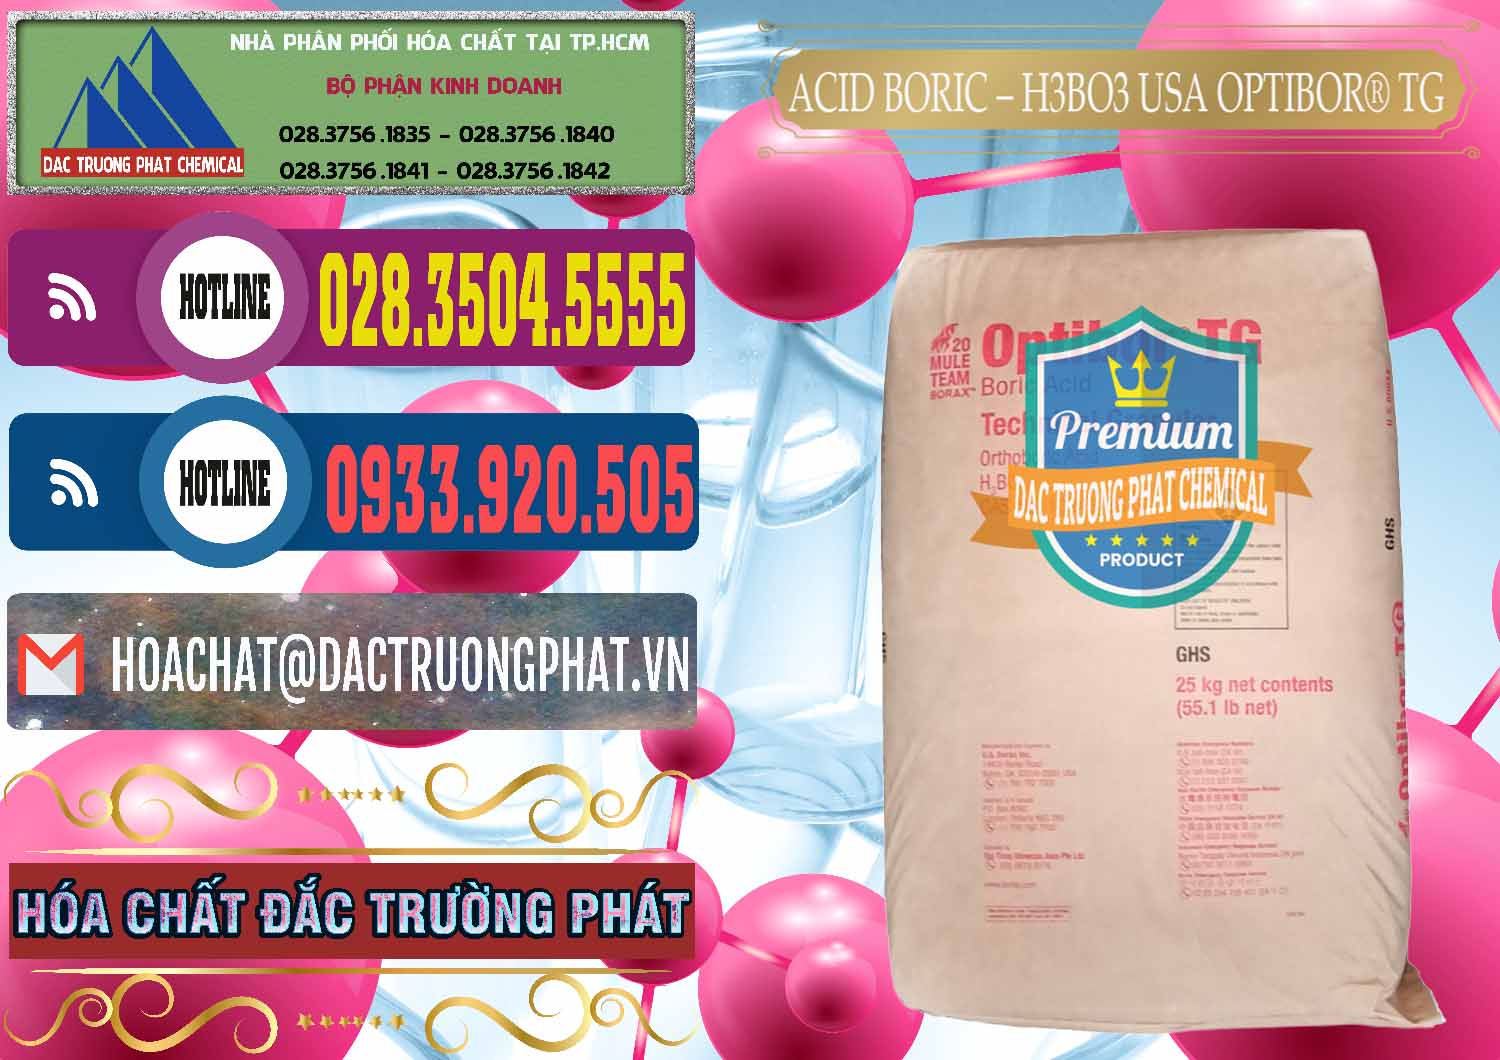 Cty bán _ phân phối Acid Boric – Axit Boric H3BO3 99% Mỹ USA OPTIBOR® TG - 0004 - Đơn vị phân phối và cung cấp hóa chất tại TP.HCM - muabanhoachat.com.vn